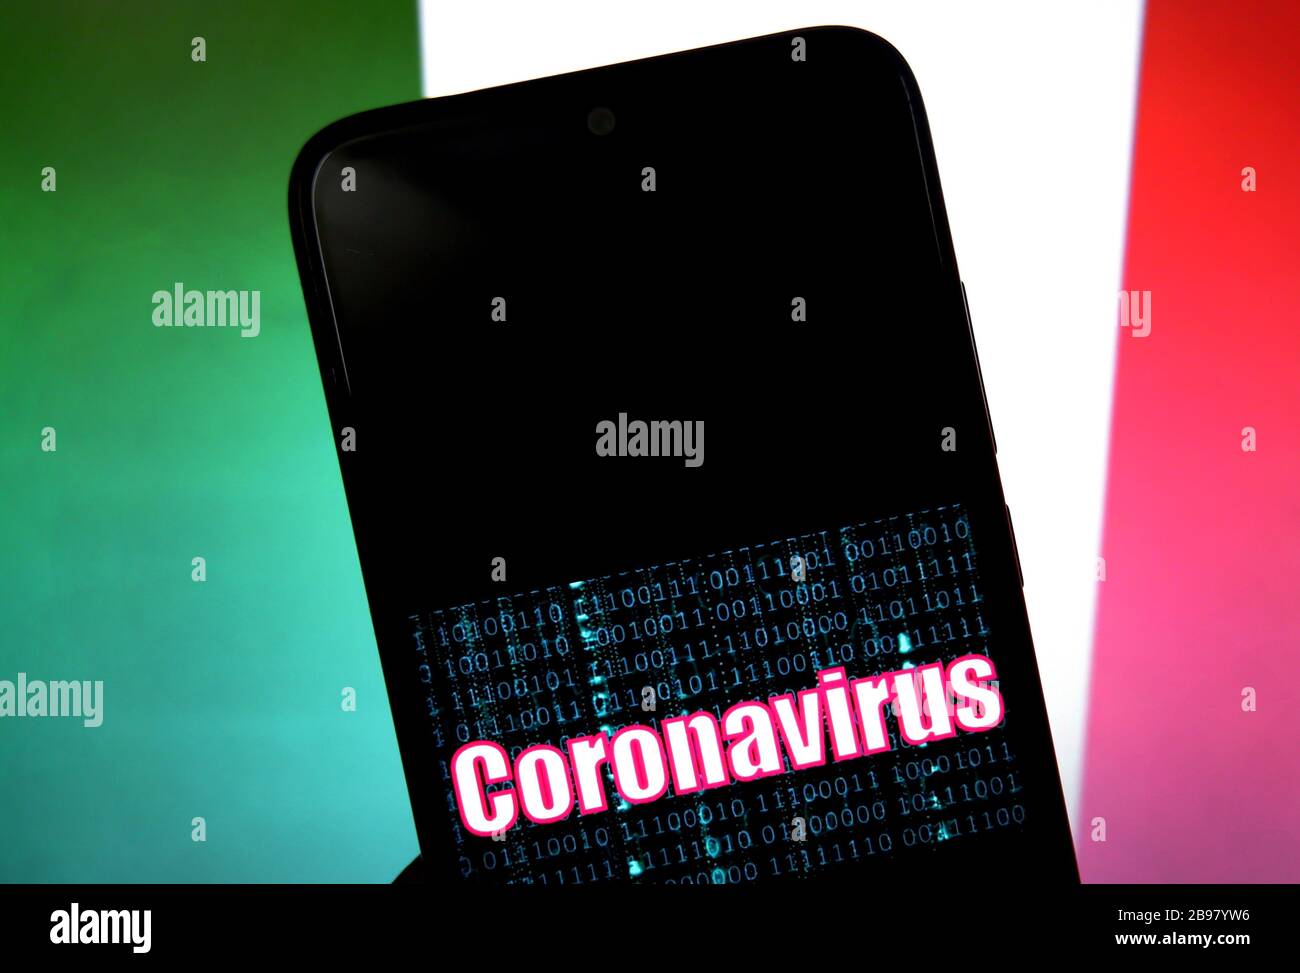 Dans cette illustration photo un logo Corona virus (Covid 2019) affiché sur un smartphone avec un drapeau italien en arrière-plan.Coronavirus (COVID-19) est une maladie infectieuse qui se propage dans le monde entier et plus de 13000 décès. Banque D'Images